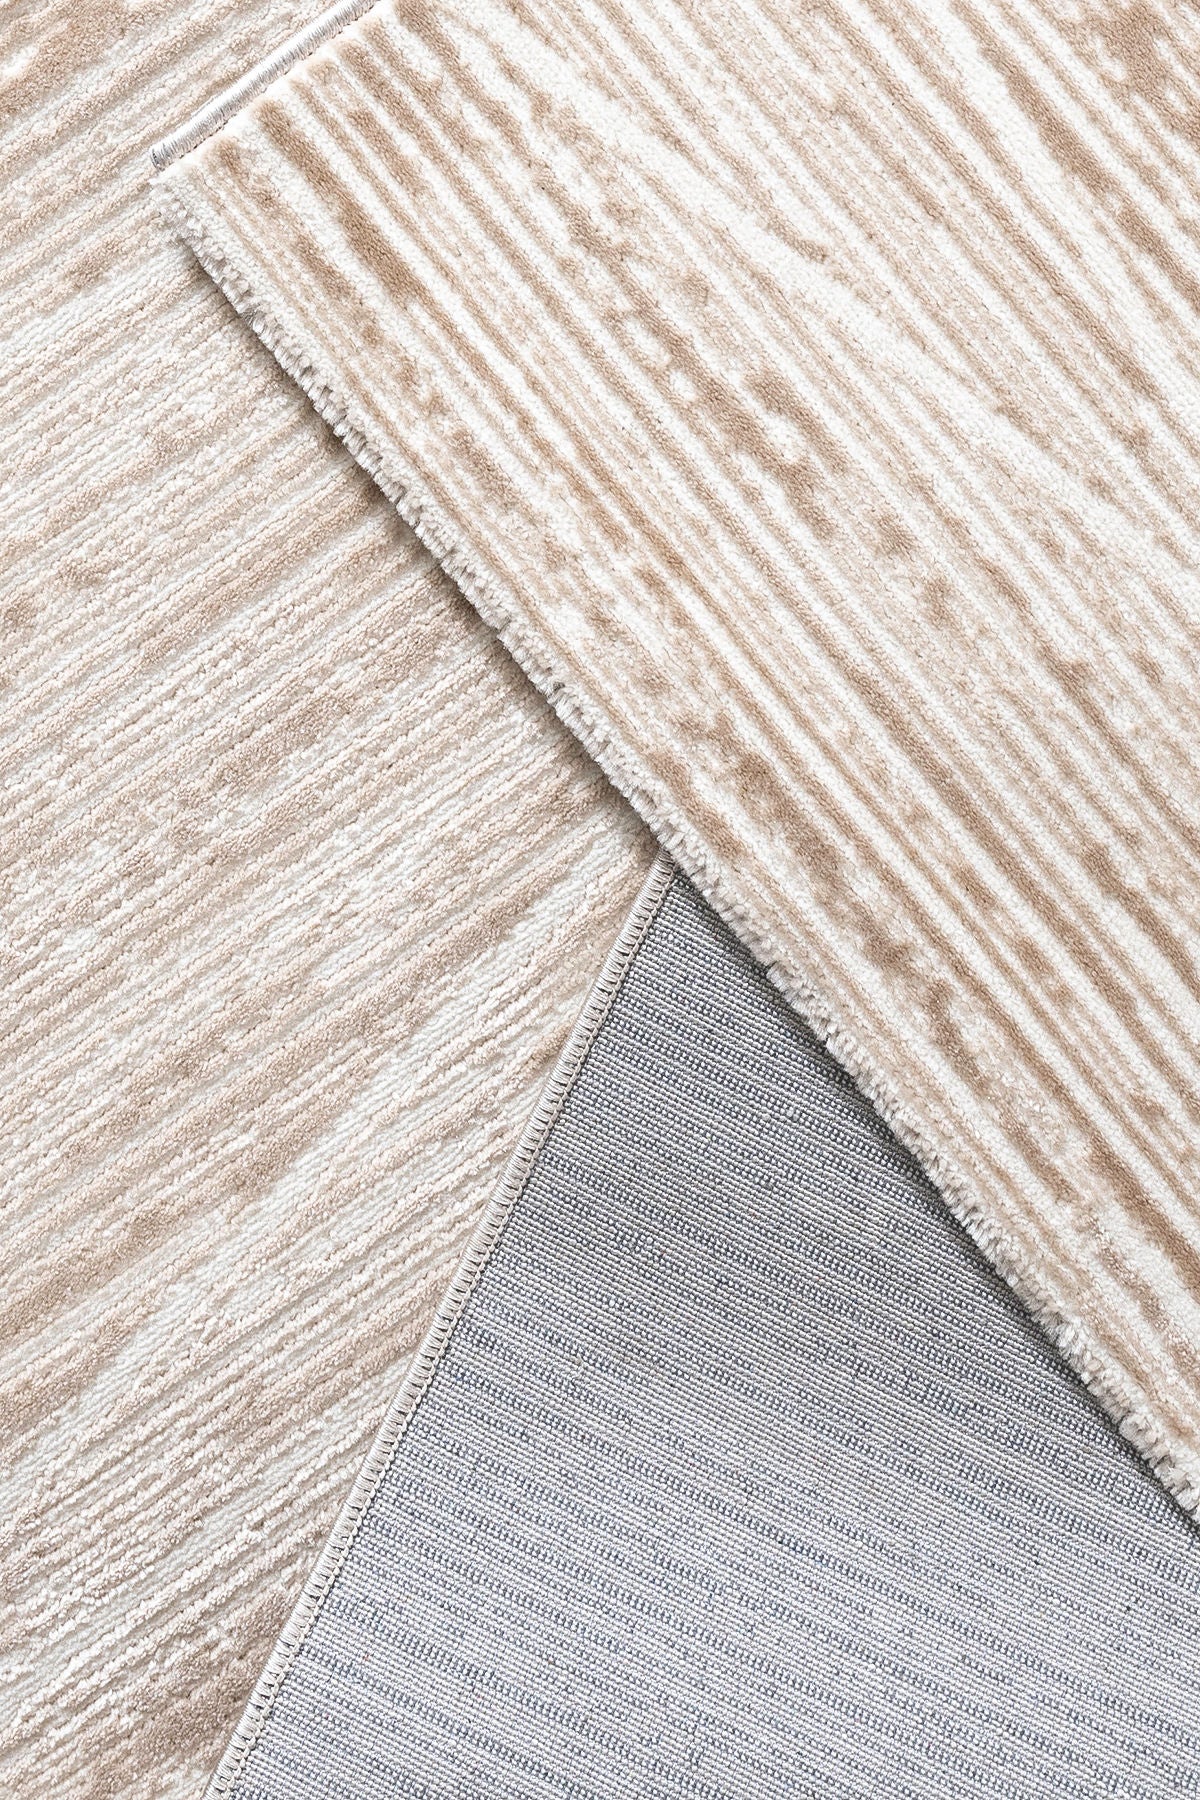 Moda 1510 - Beige - Carpet (200 x 290)